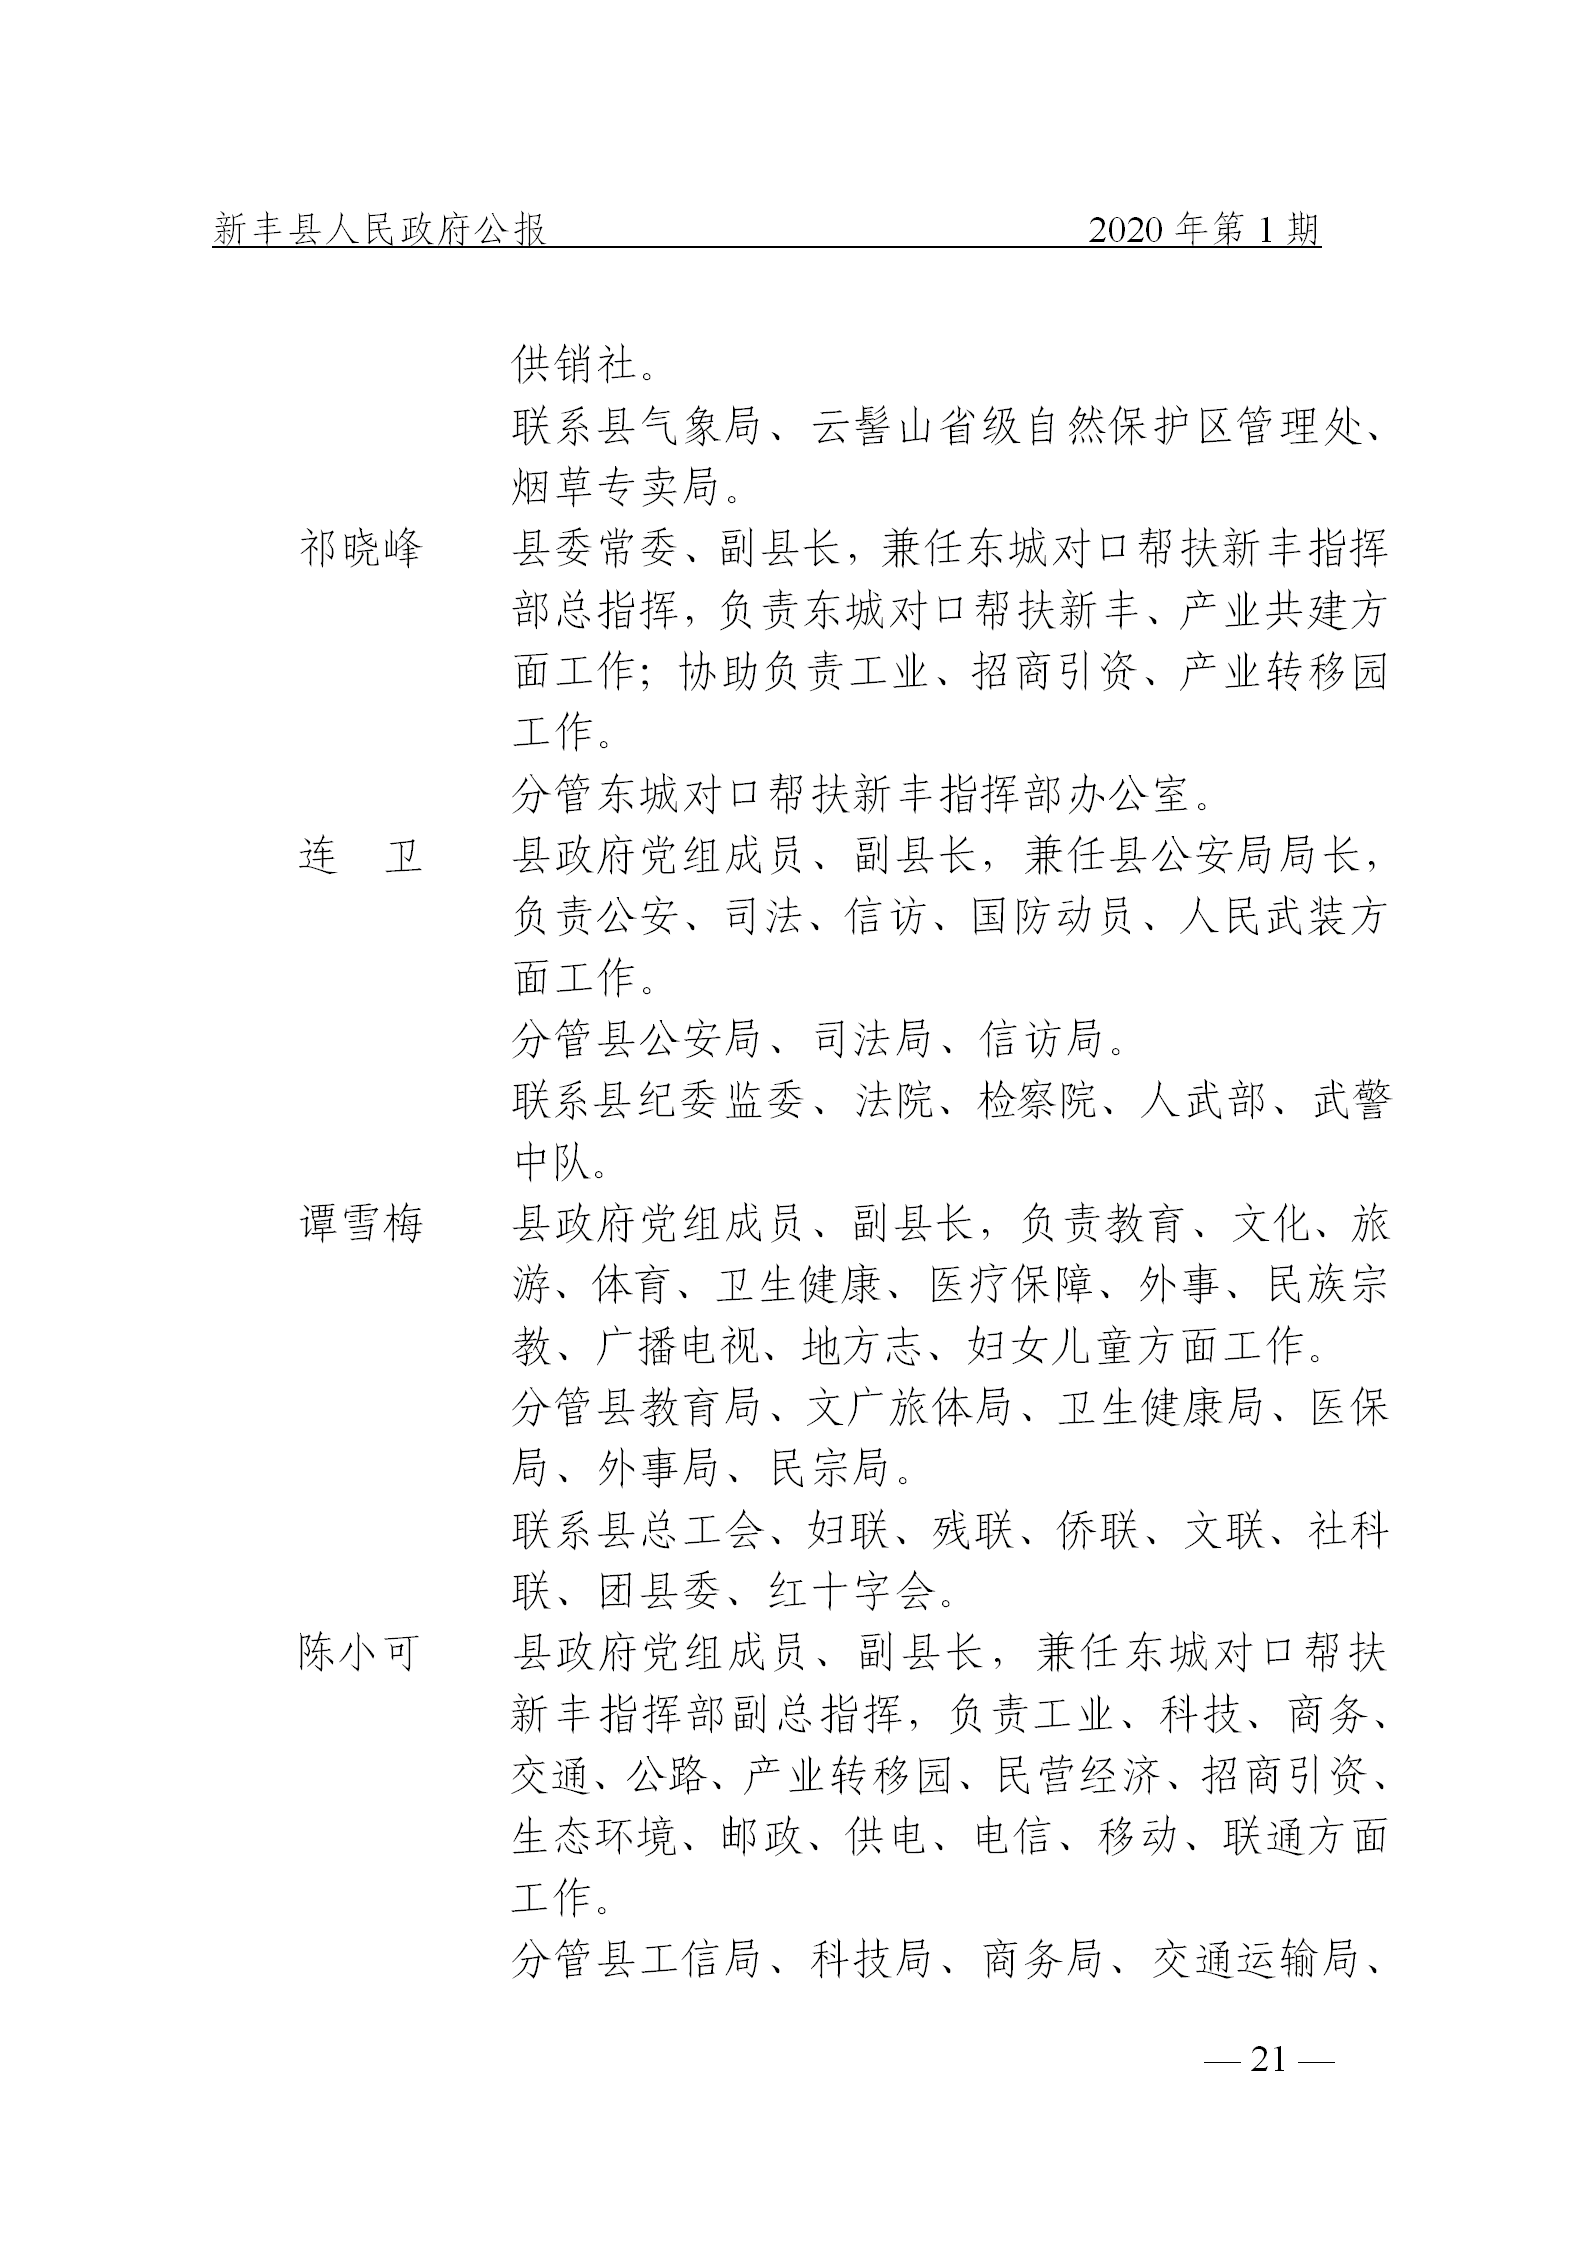 《新丰县人民政府公报》2020年第1期(1)_21.png